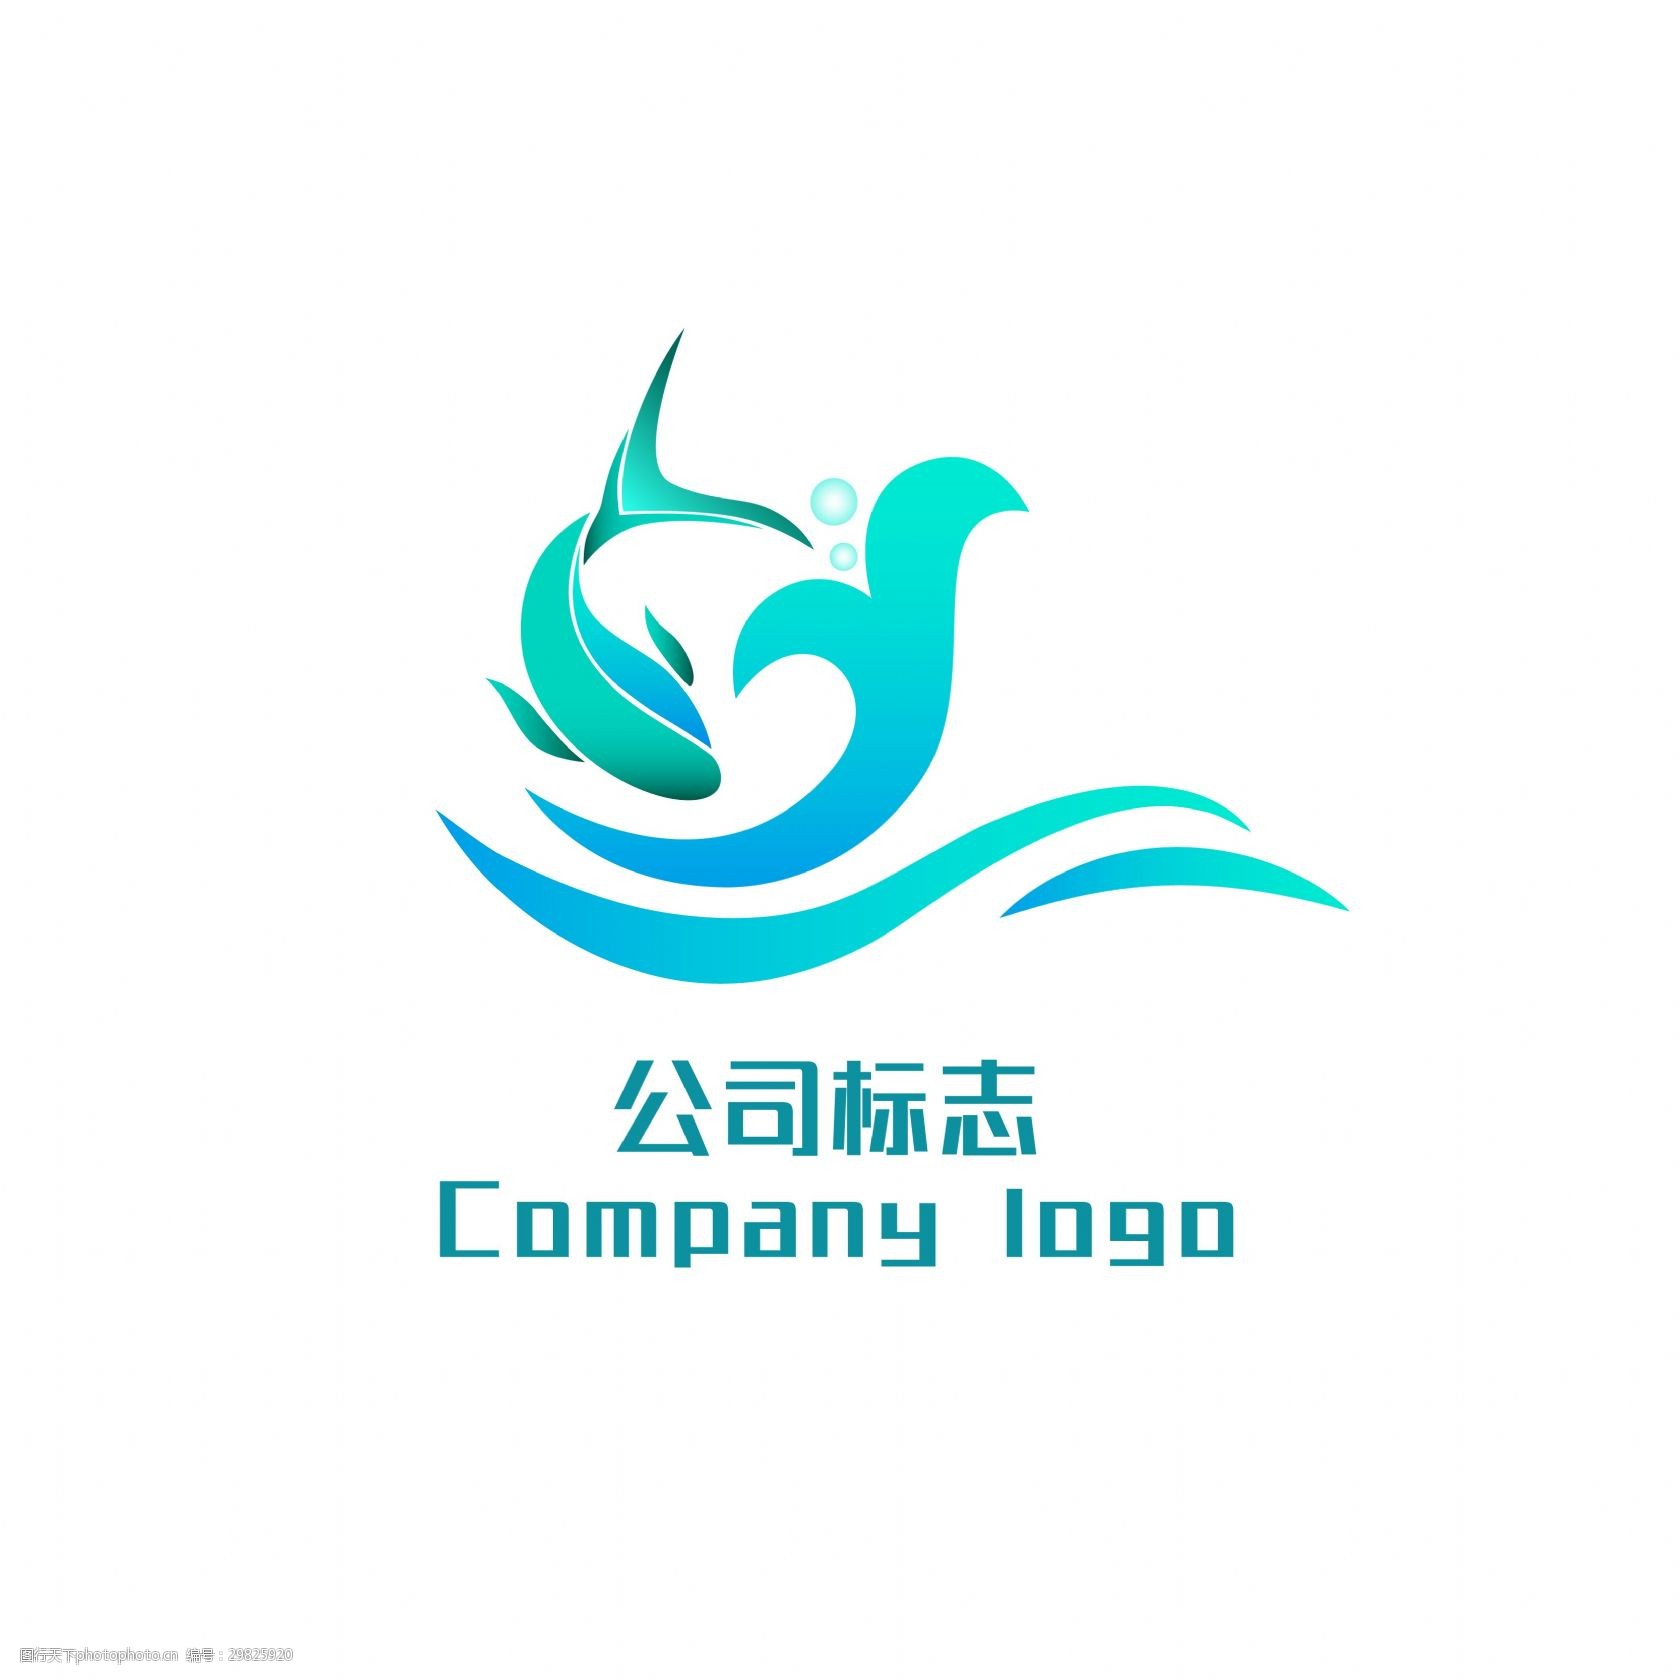 关键词:公司logo海产品标志设计 海产品logo logo设计 海鲜 海洋logo